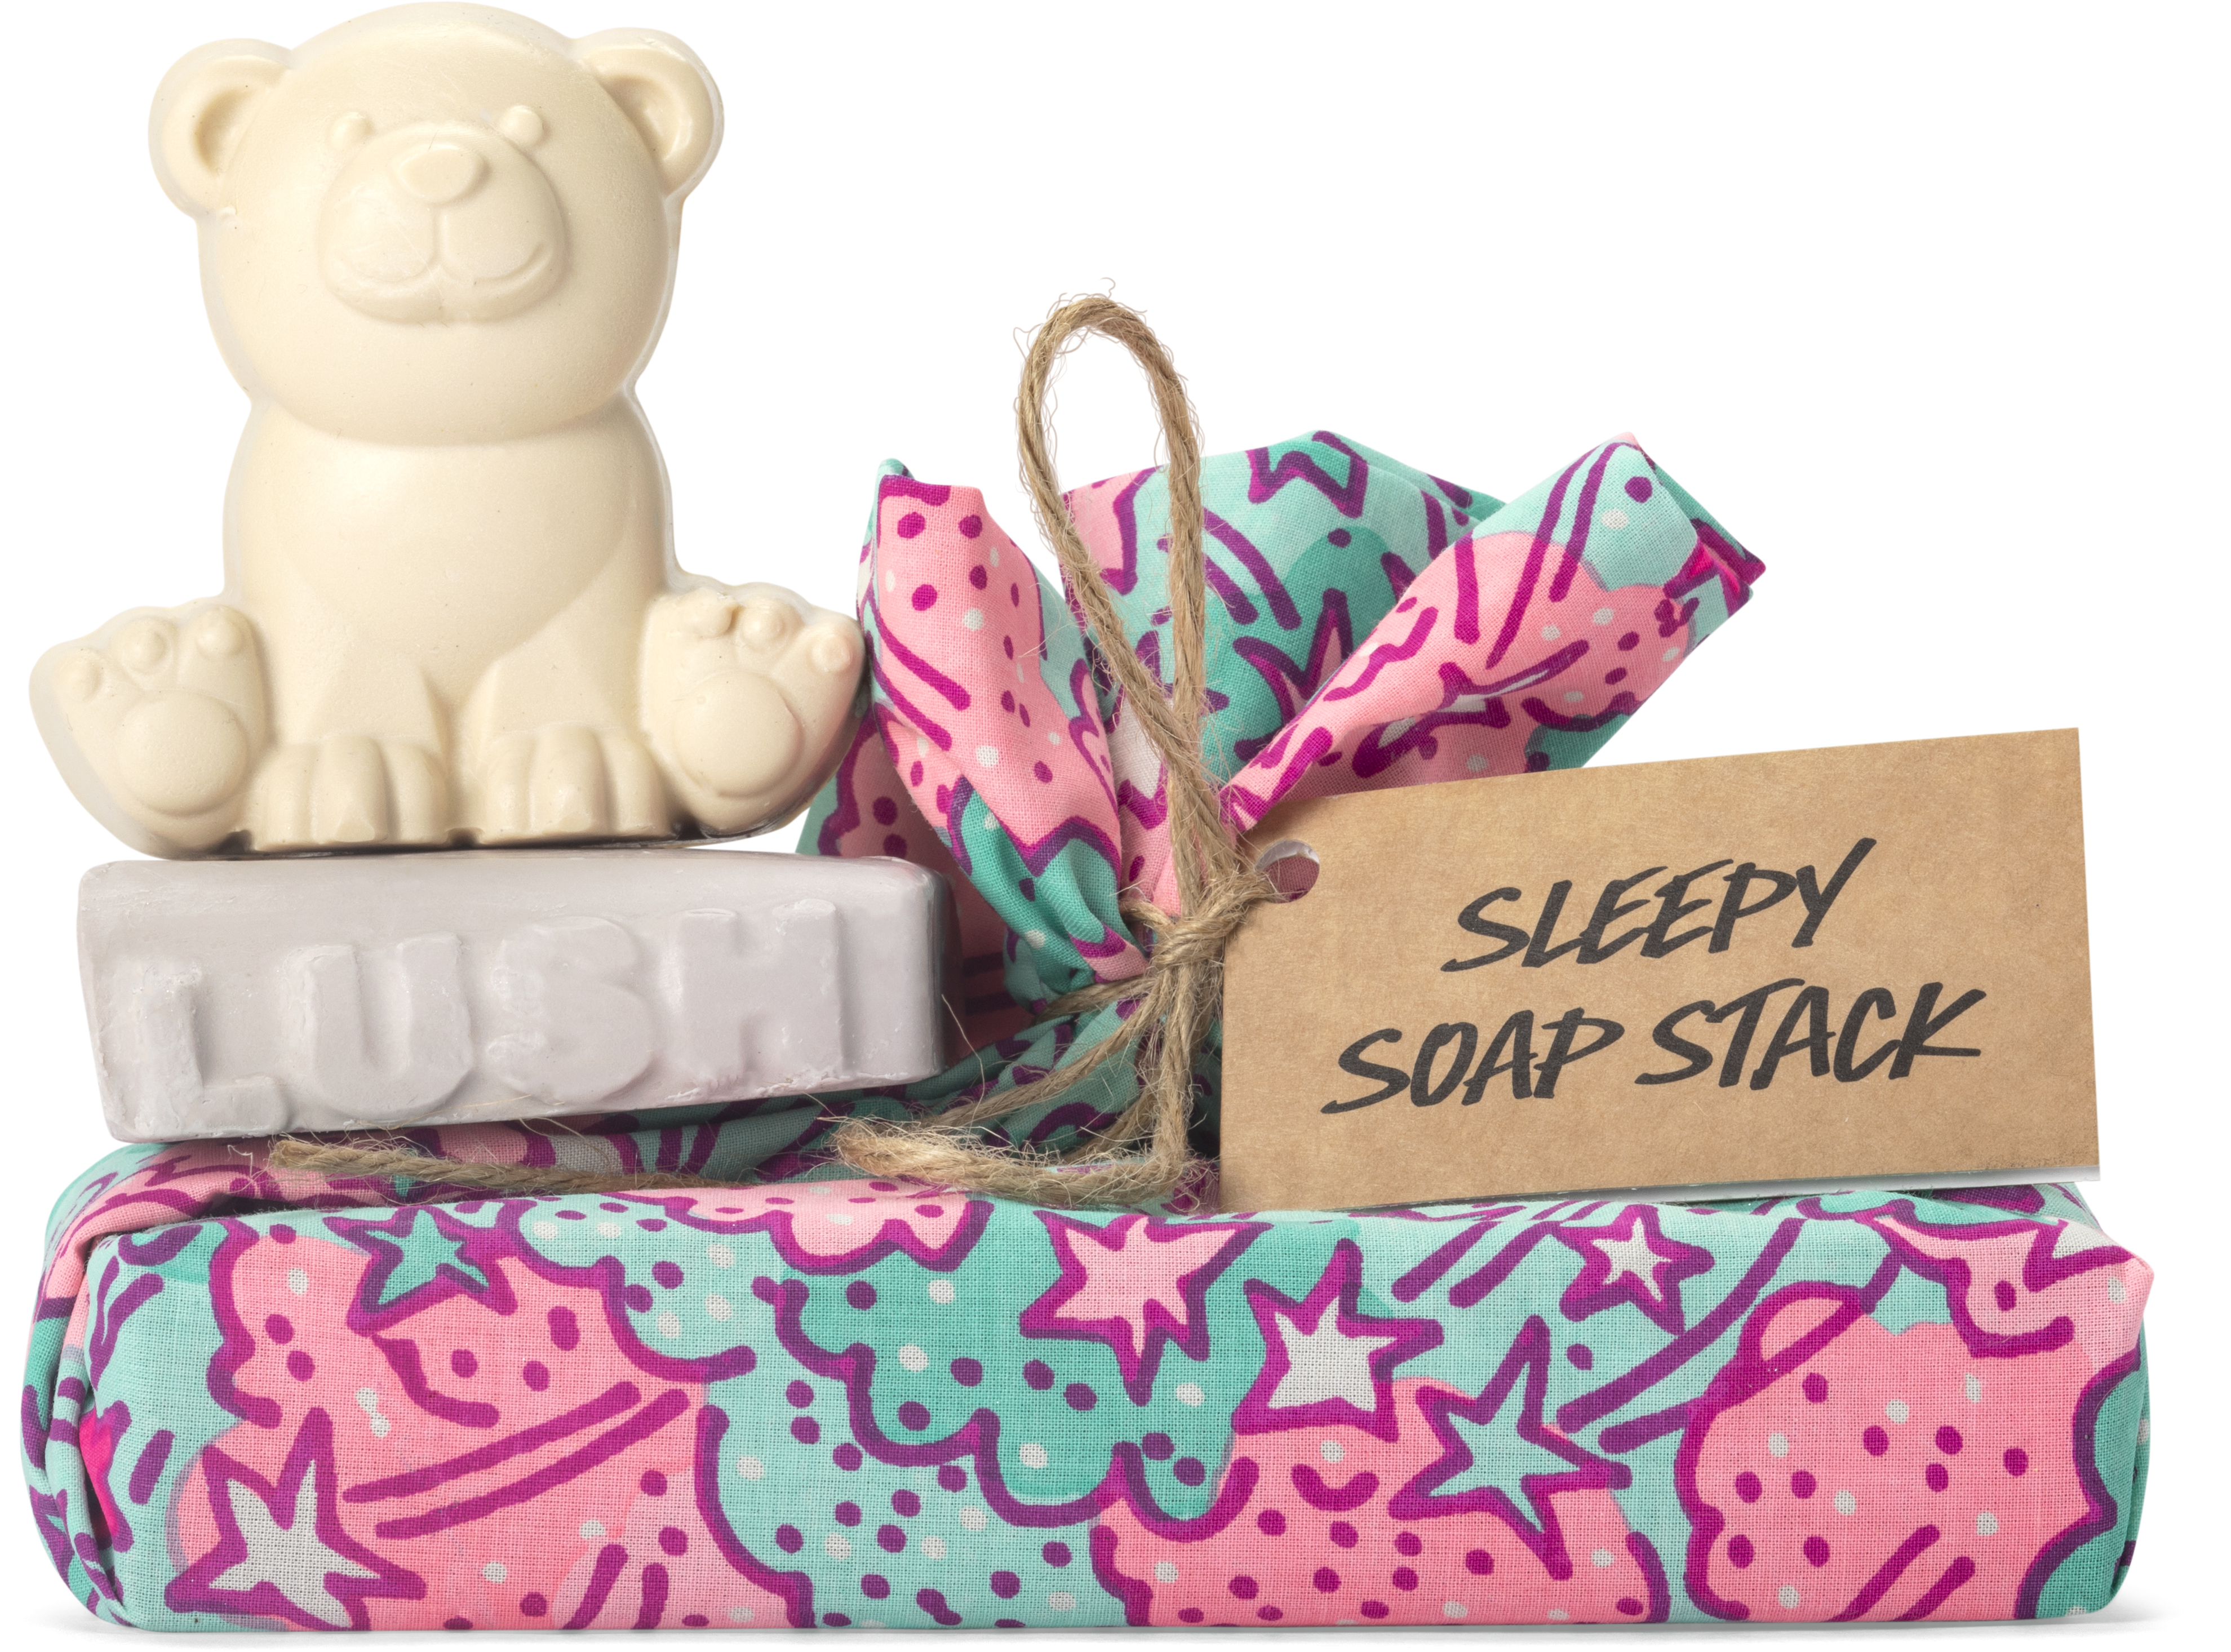 Sleepy Soap Stack (dois sabonetes e uma toalha), Lush, €17,50